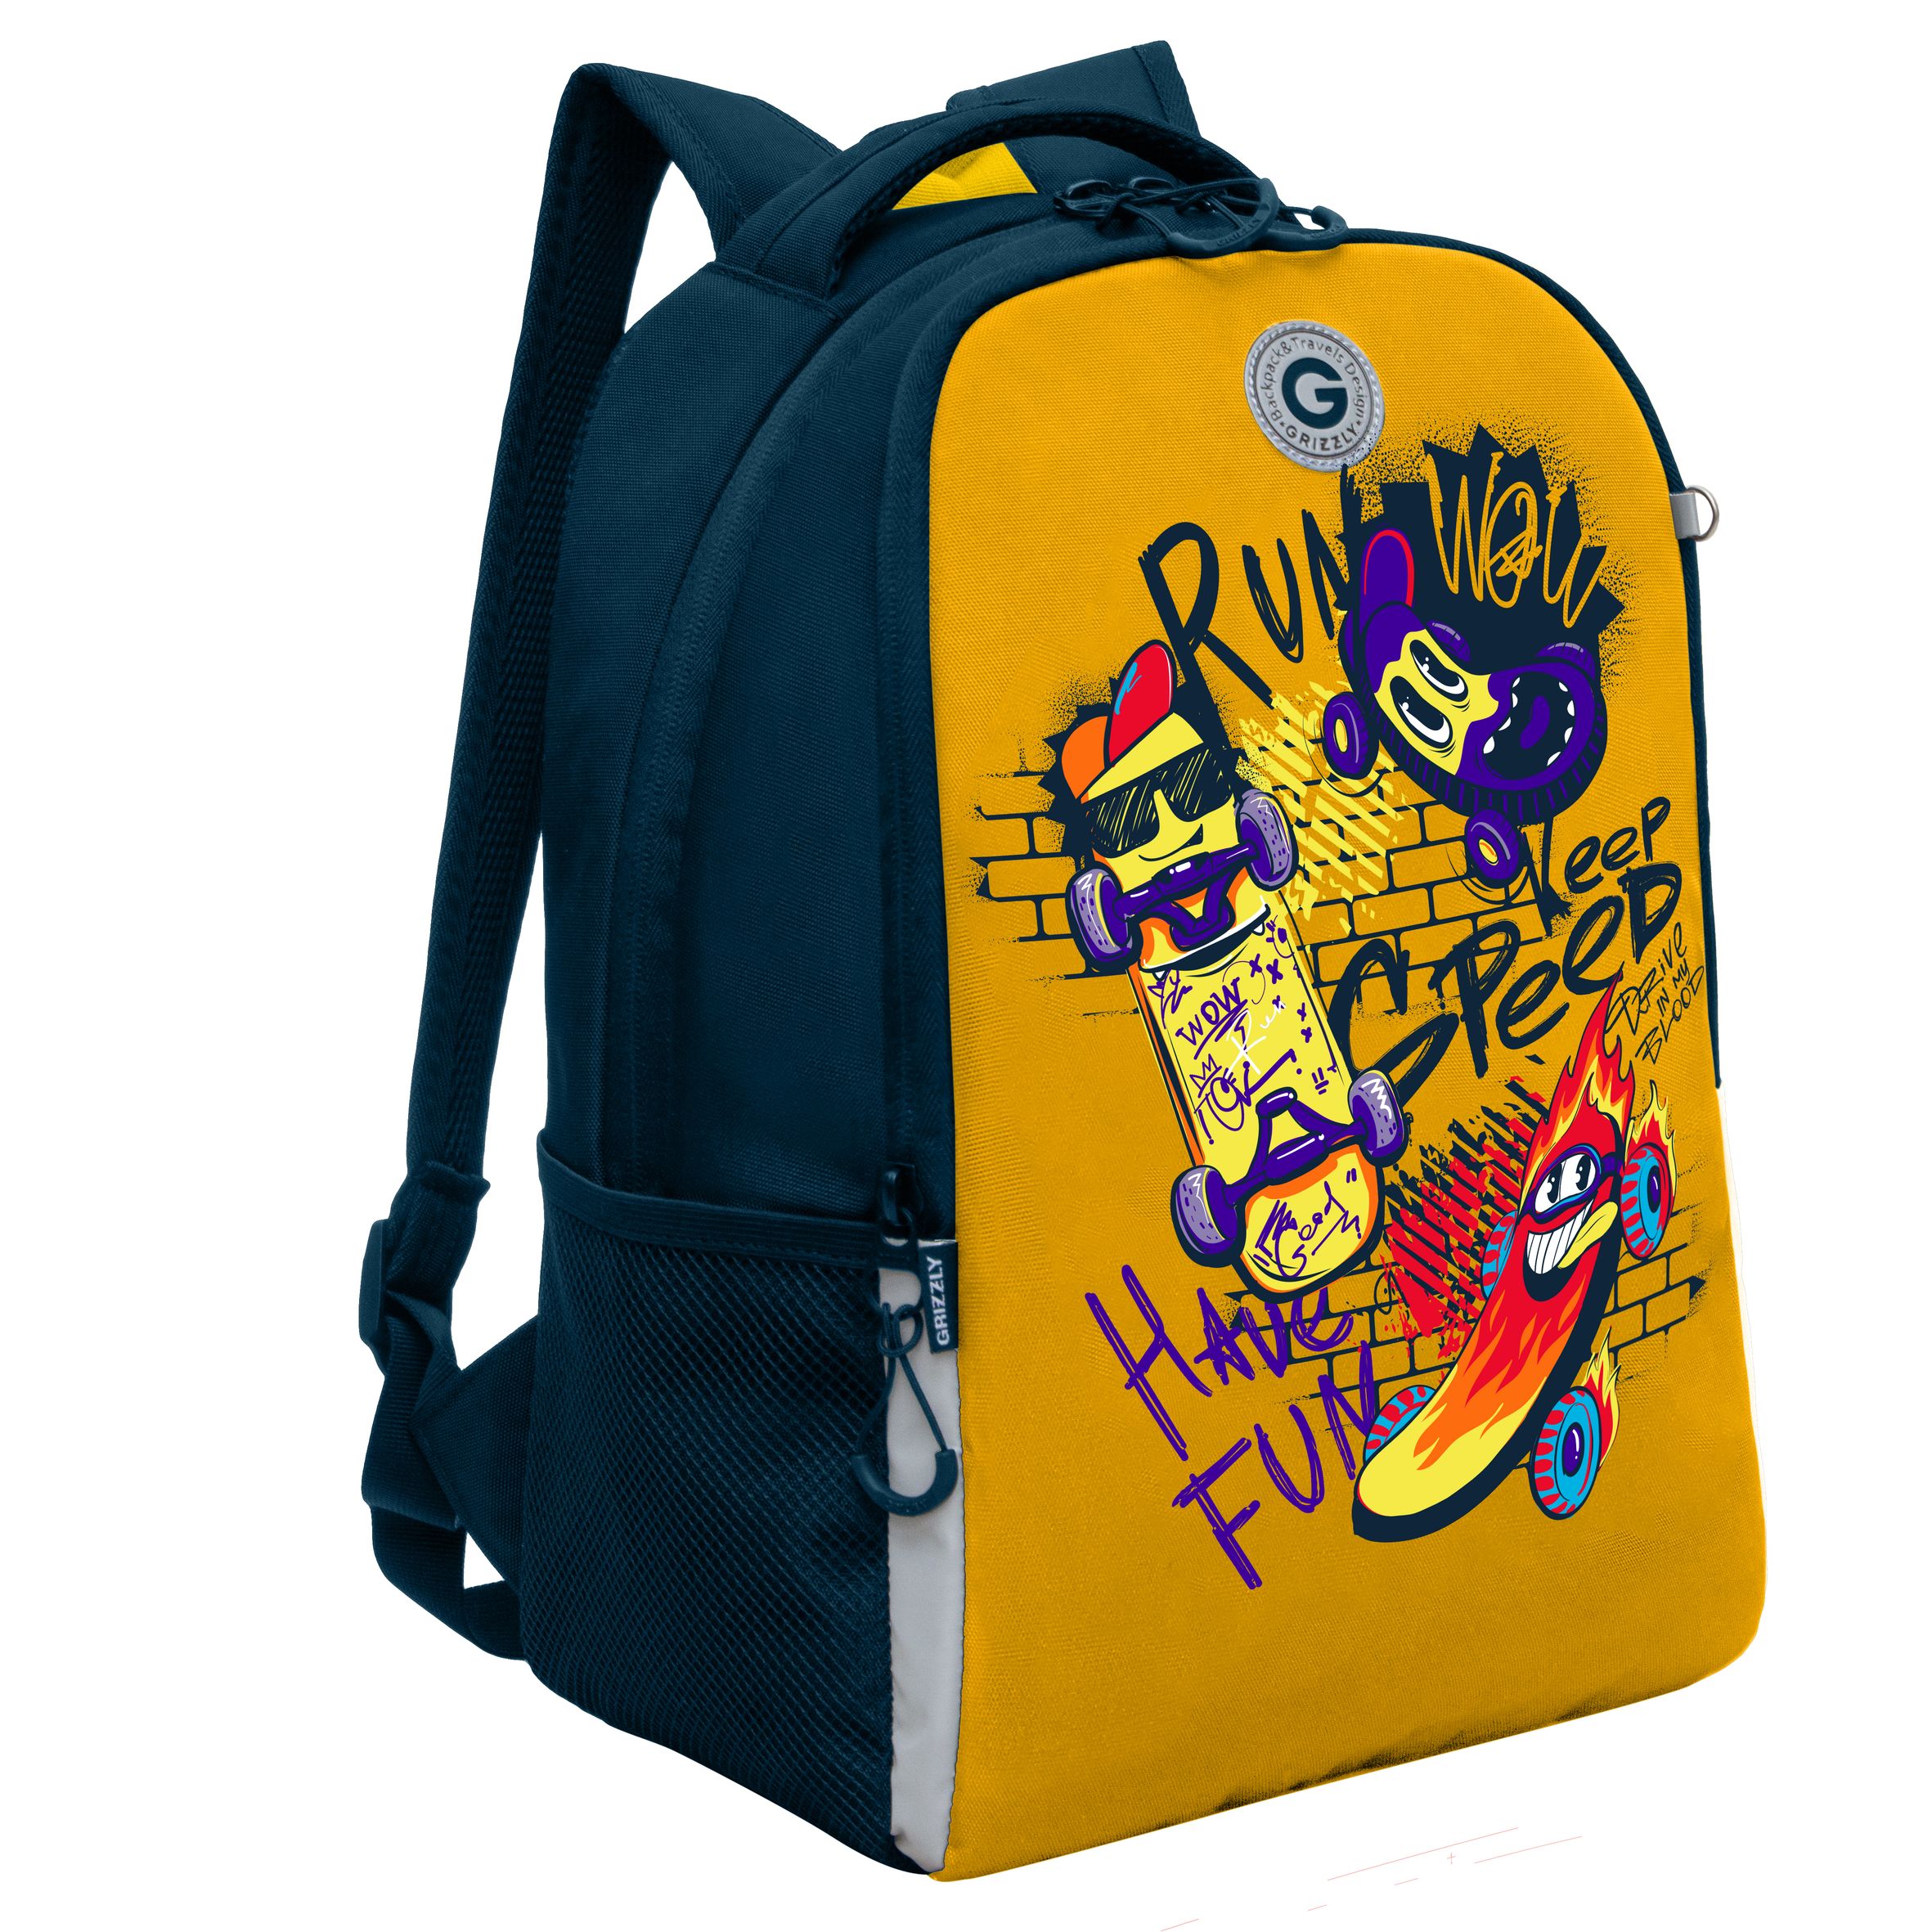 Рюкзак школьный GRIZZLY легкий с жесткой спинкой, 2 отделения, для мальчика RB-451-7/2 рюкзак школьный grizzly с карманом для ноутбука 13 2 отделения для девочки rg 466 2 1